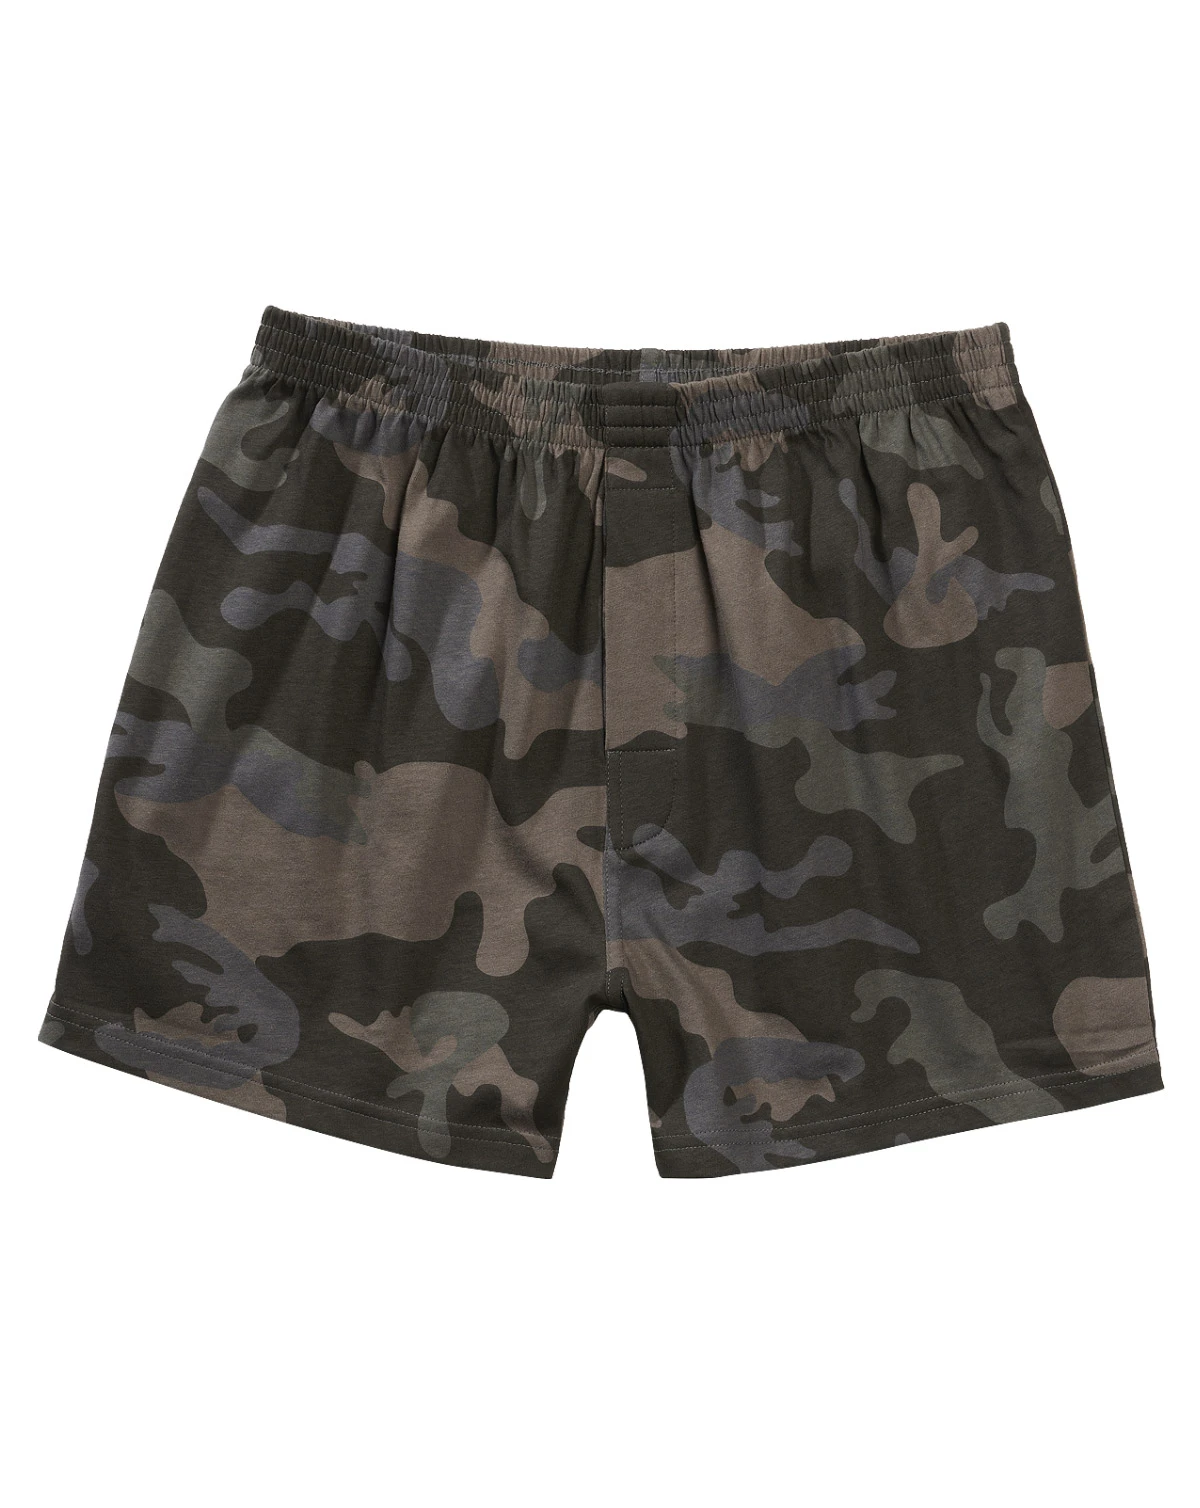 BEFOKA Womens Underwear Military Men's Camouflage Boxer Briefs